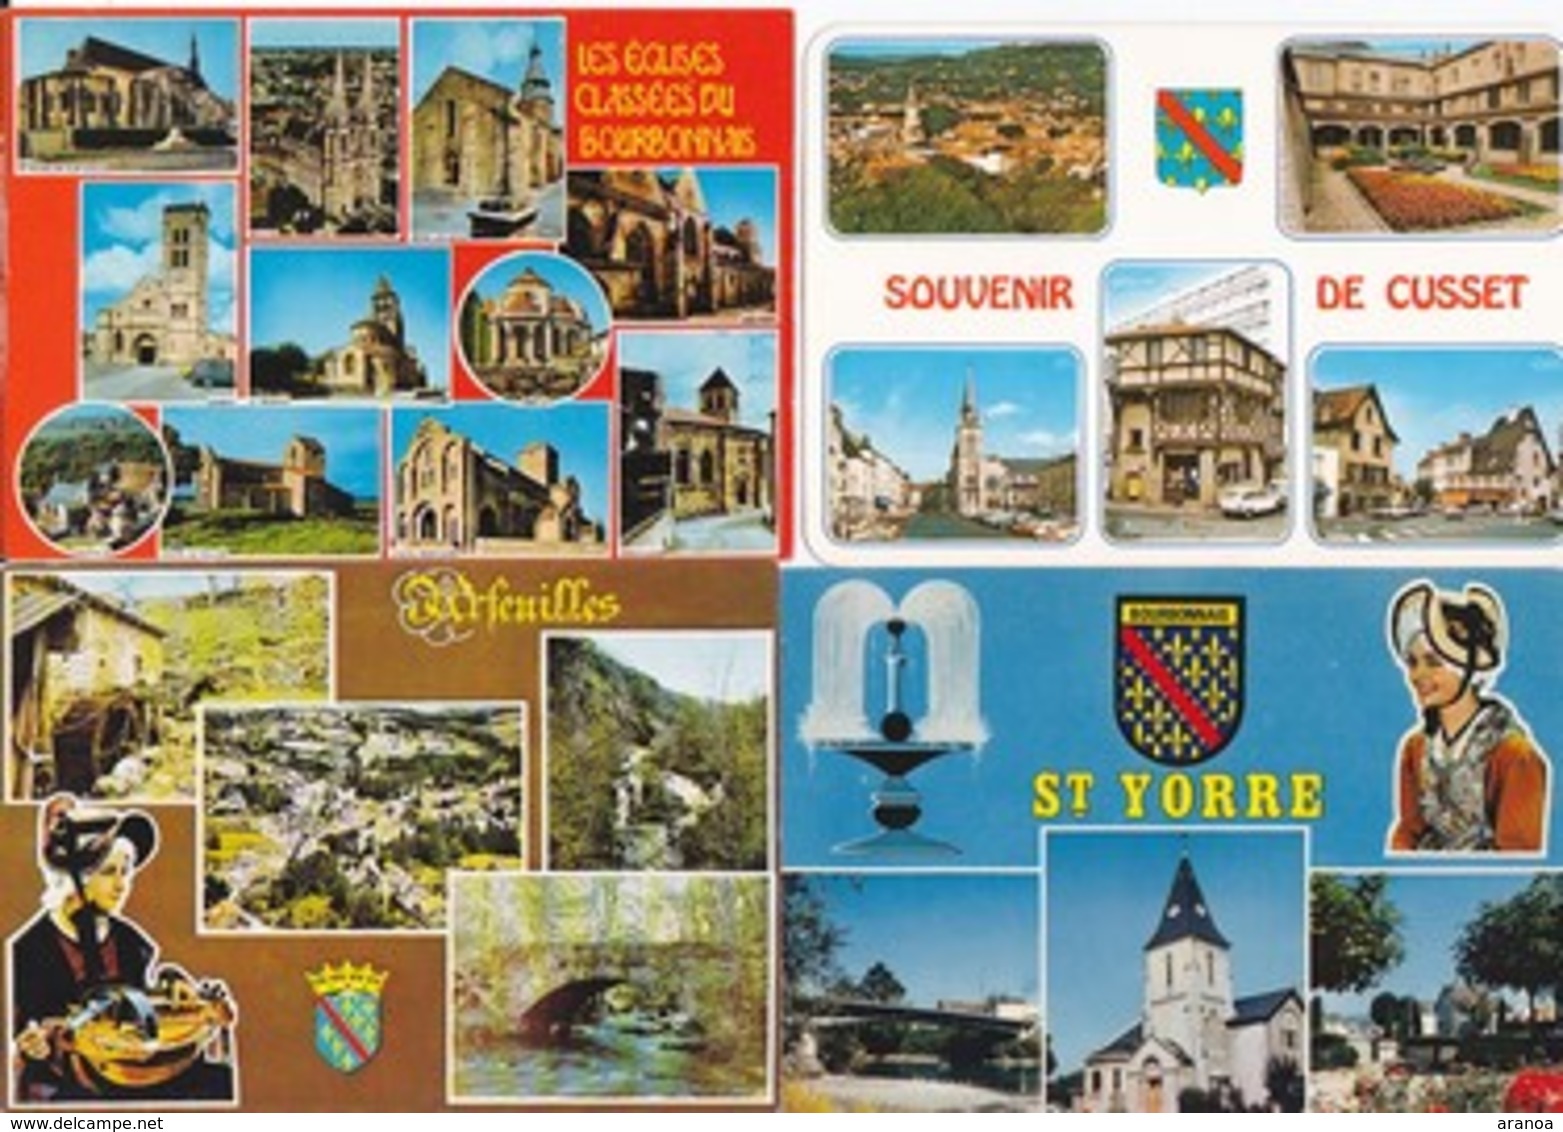 France -- Départements différents (03) -- Multivues -- Lot de 80 cartes